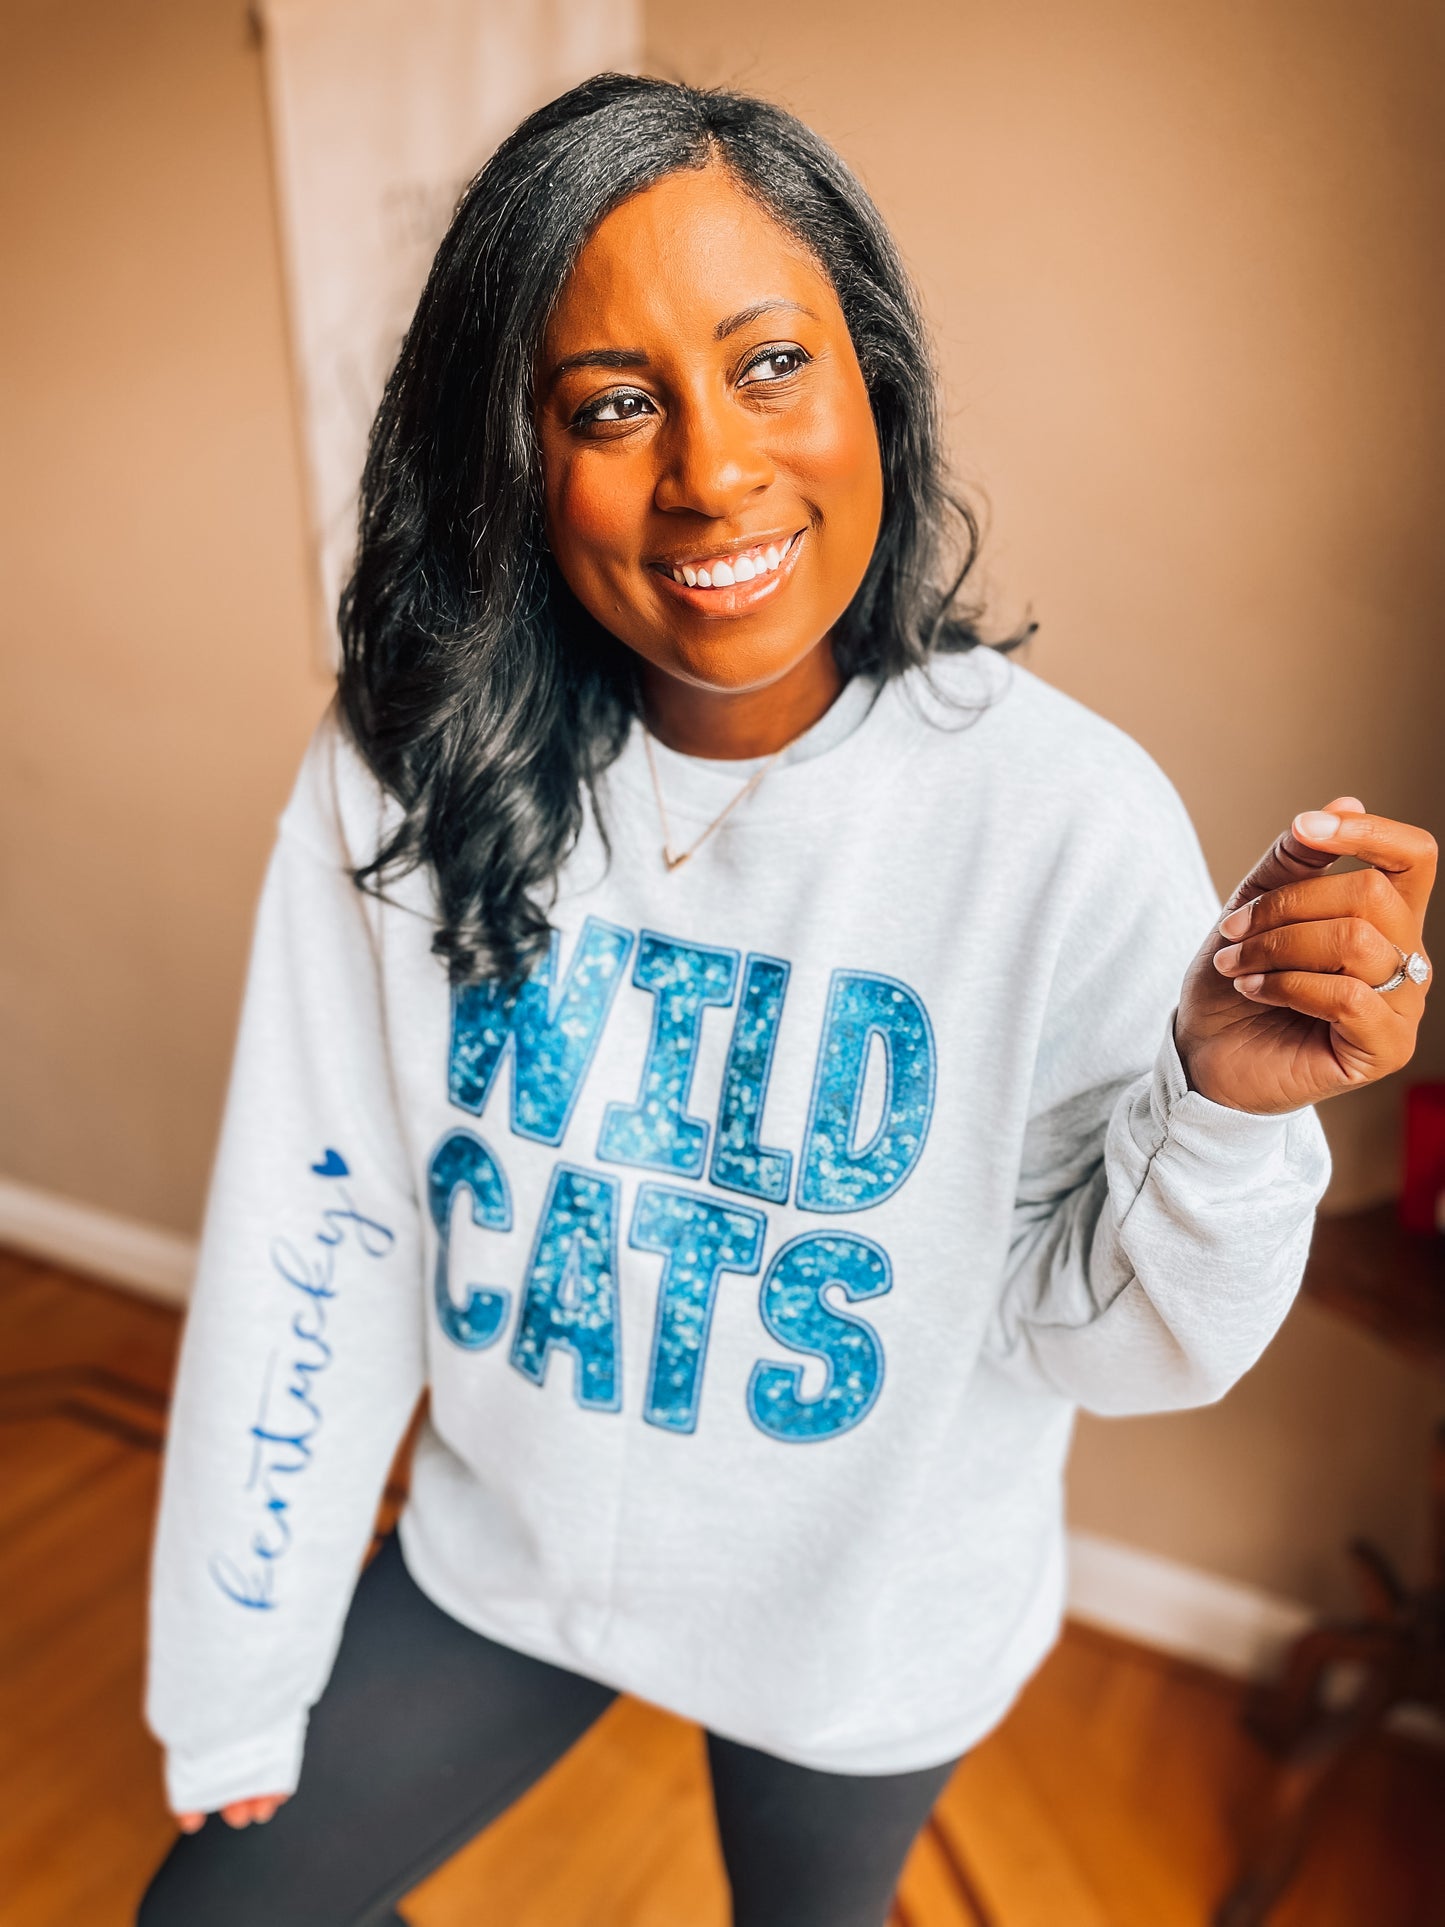 Kentucky Wildcats Crewneck Sweatshirt